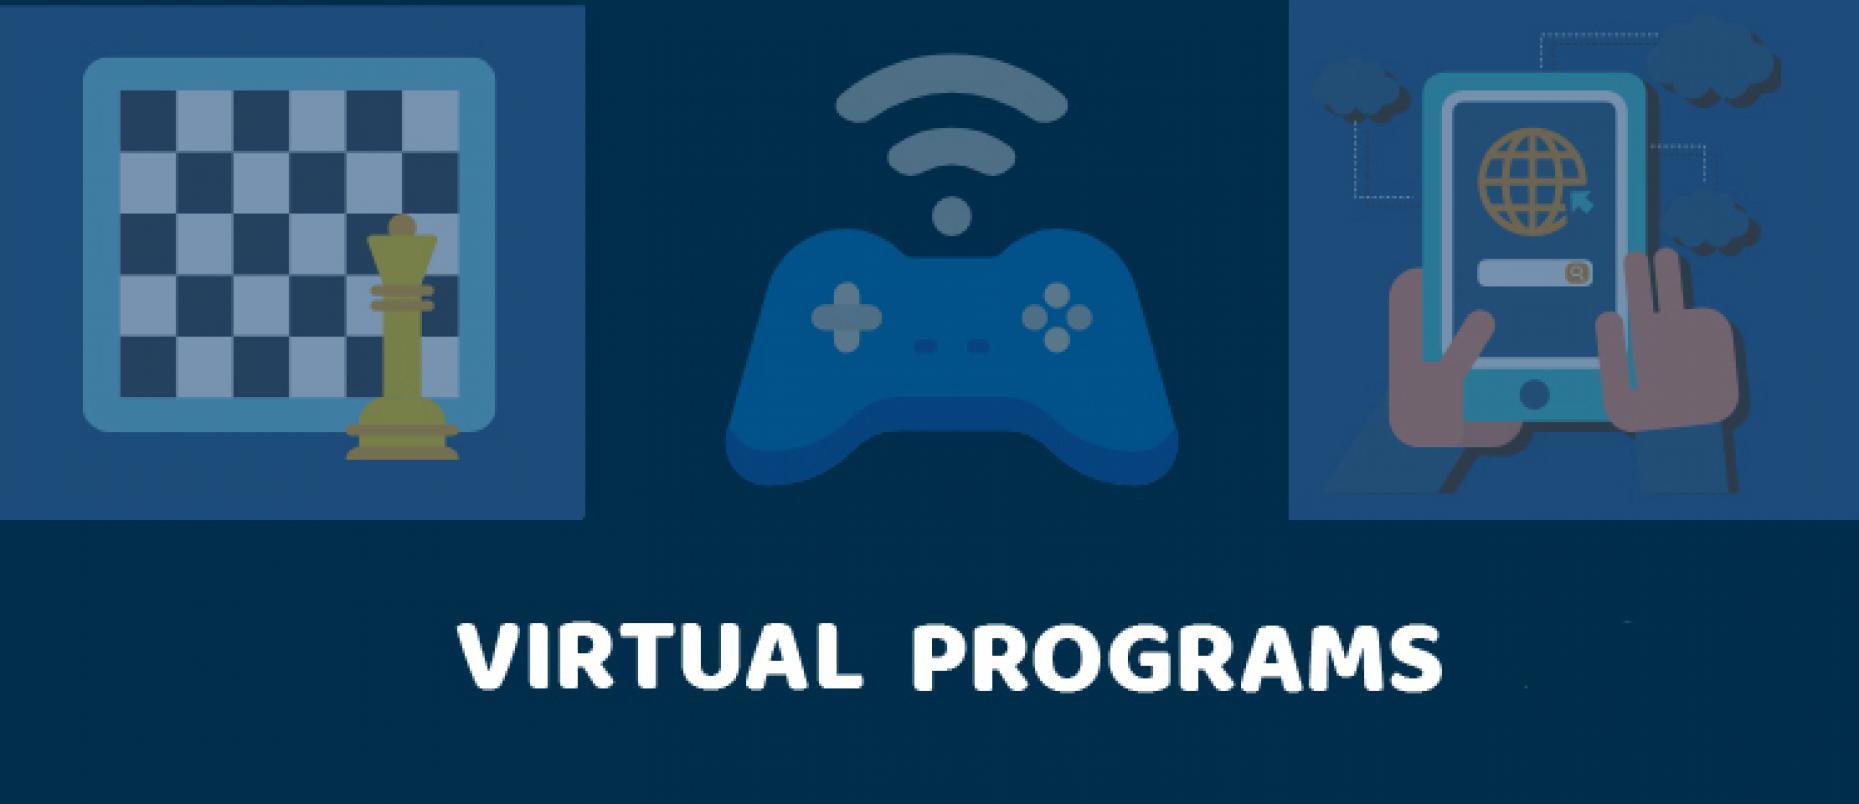 virtual programs